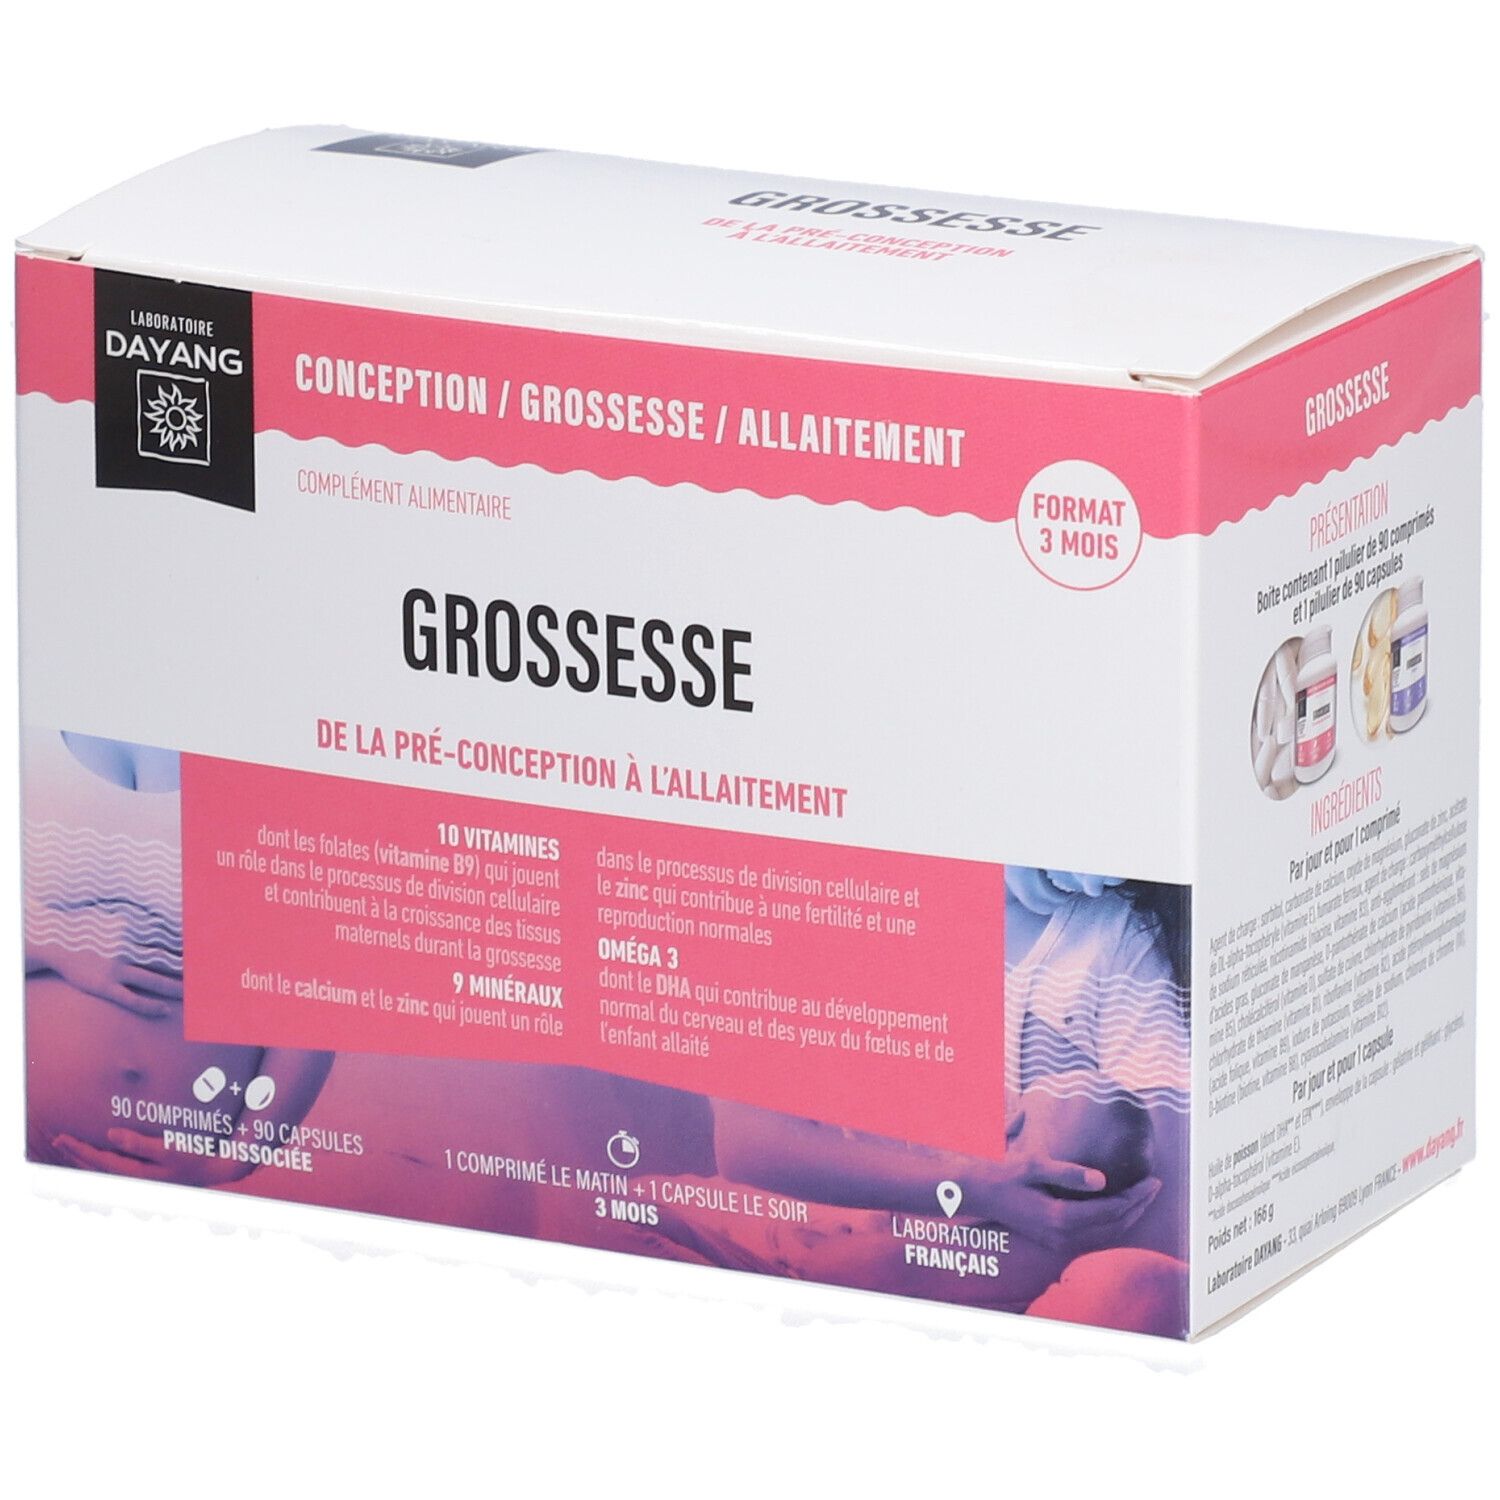 Dayang Grossesse - Comprimé + capsule, complément alimentaire pour la grossesse. - bt 90